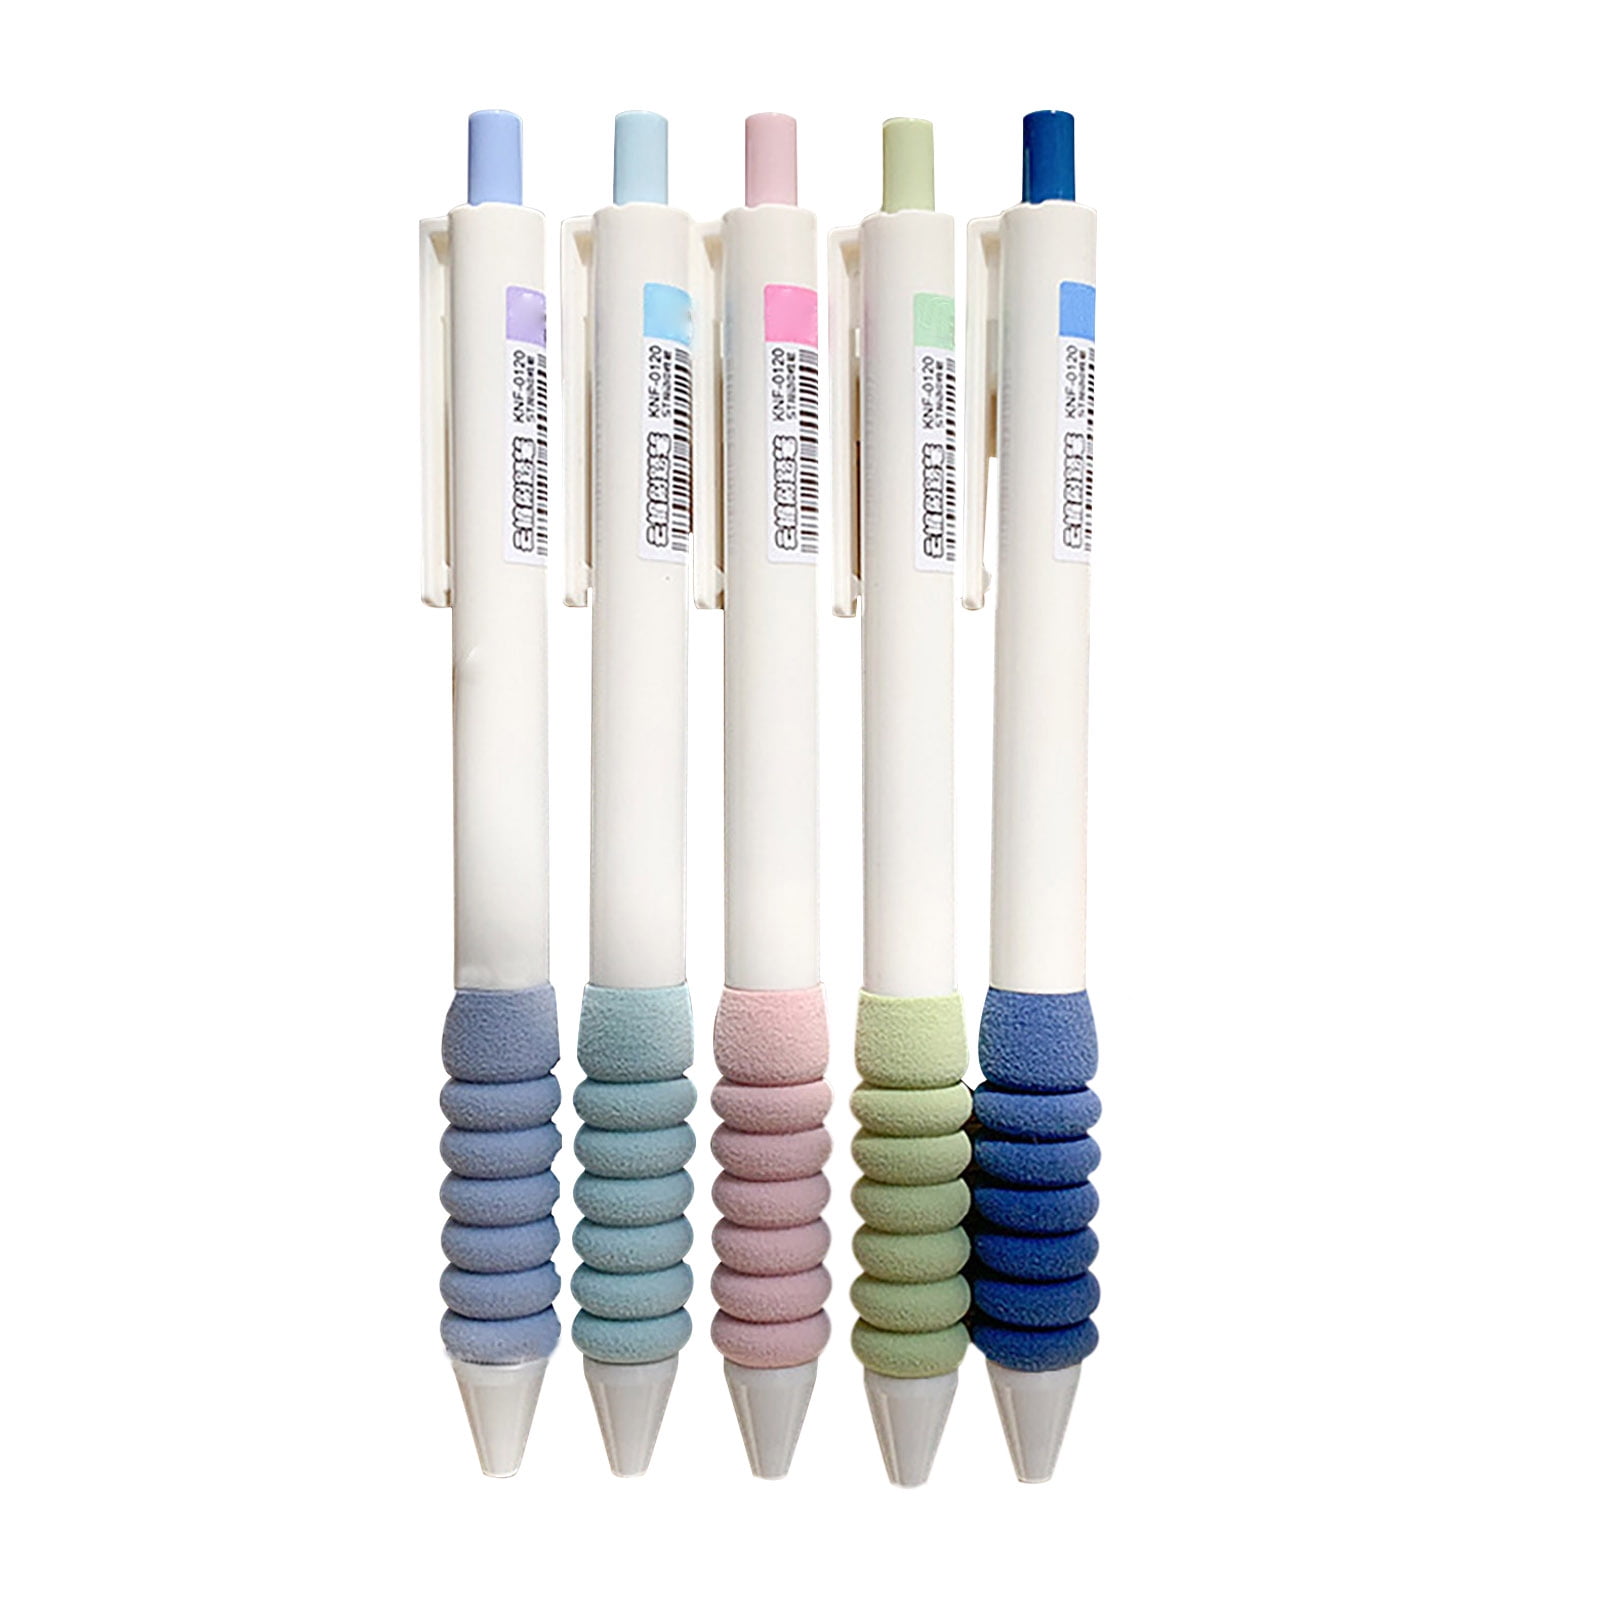 Sakura Gelly Roll Gel Pens, Opaque Bright White Ink, Medium Point